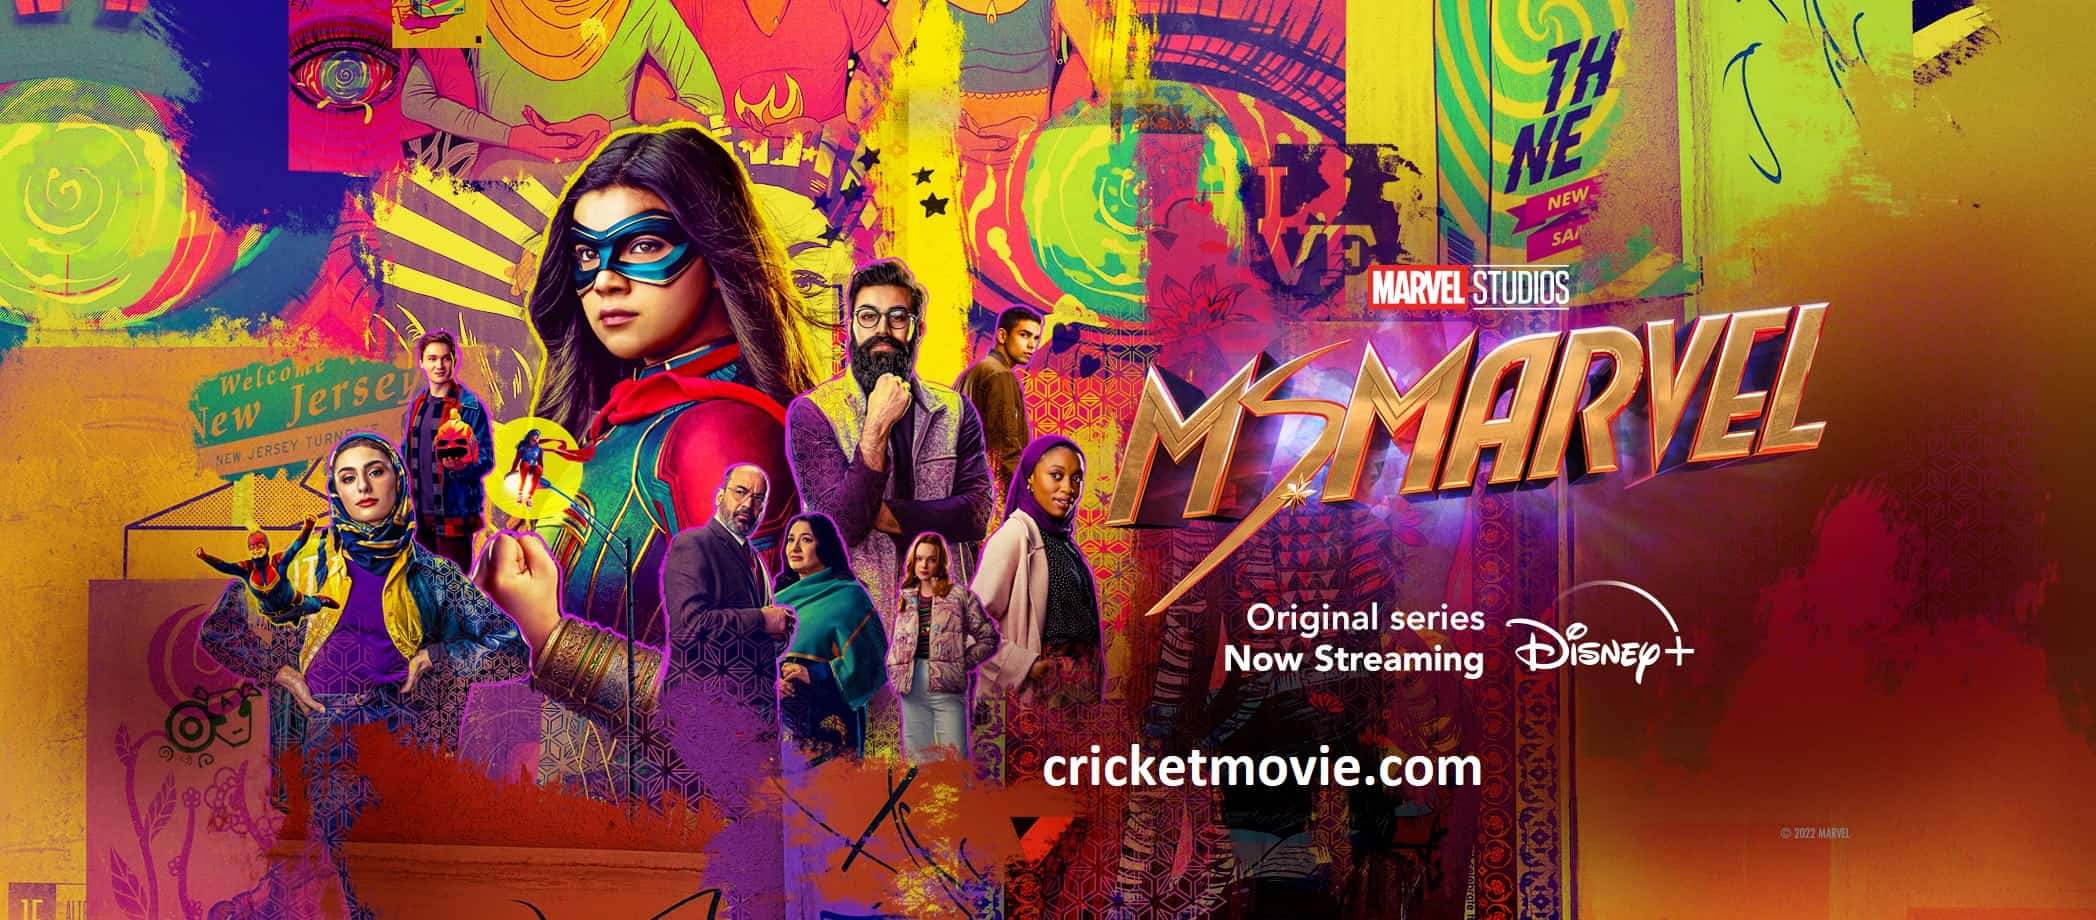 Ms Marvel Episode 1 Review-cricketmovie.com